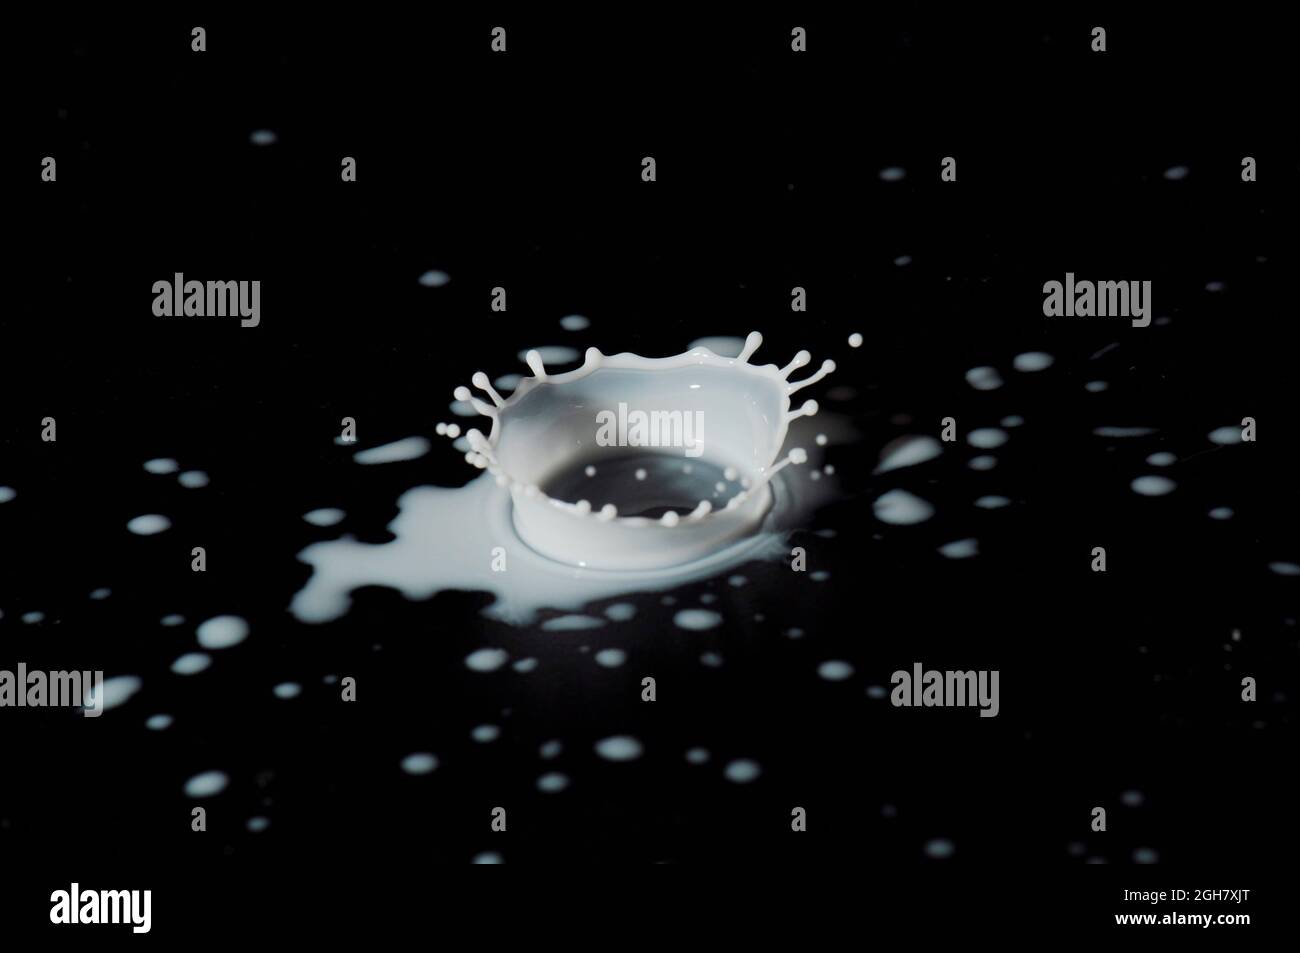 Flash ad alta velocità per fotografare le gocce di latte. La gocciolina si atterra nel liquido e produce una coronetta. Foto Stock